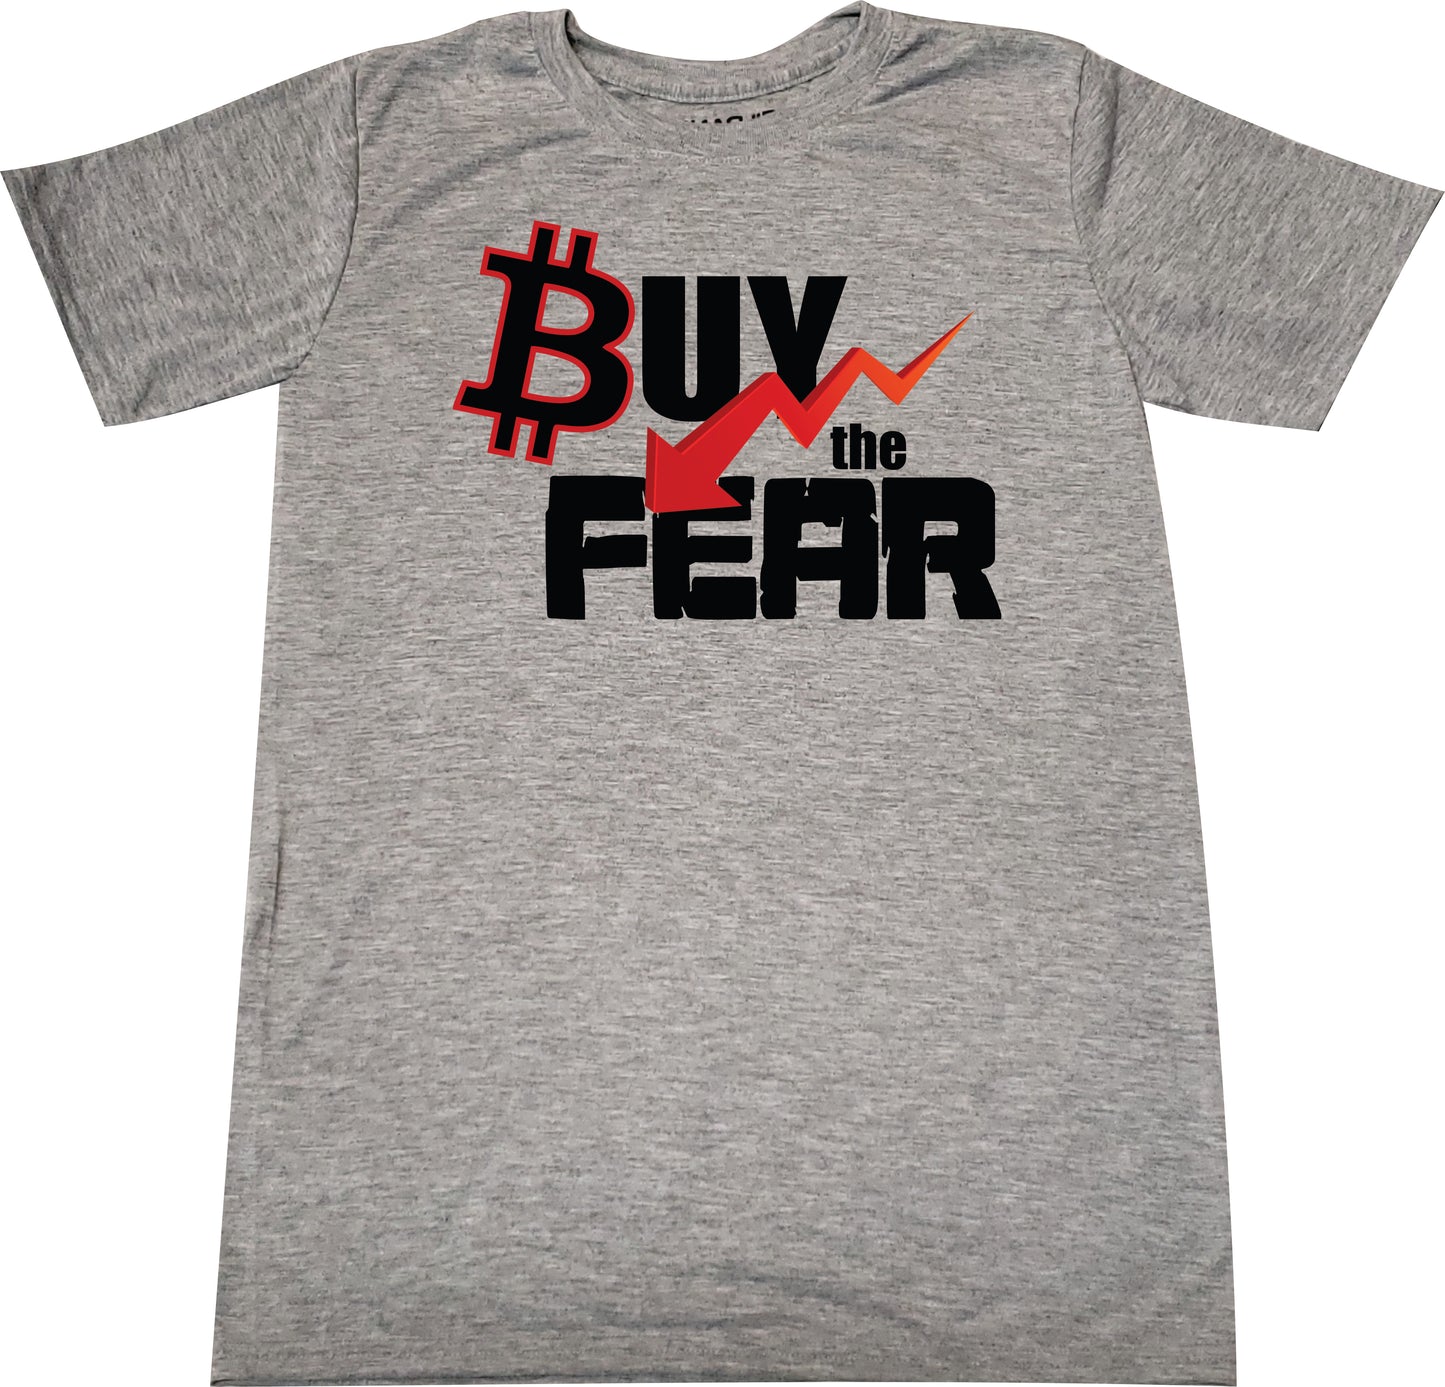 Buy the Fear Tshirt